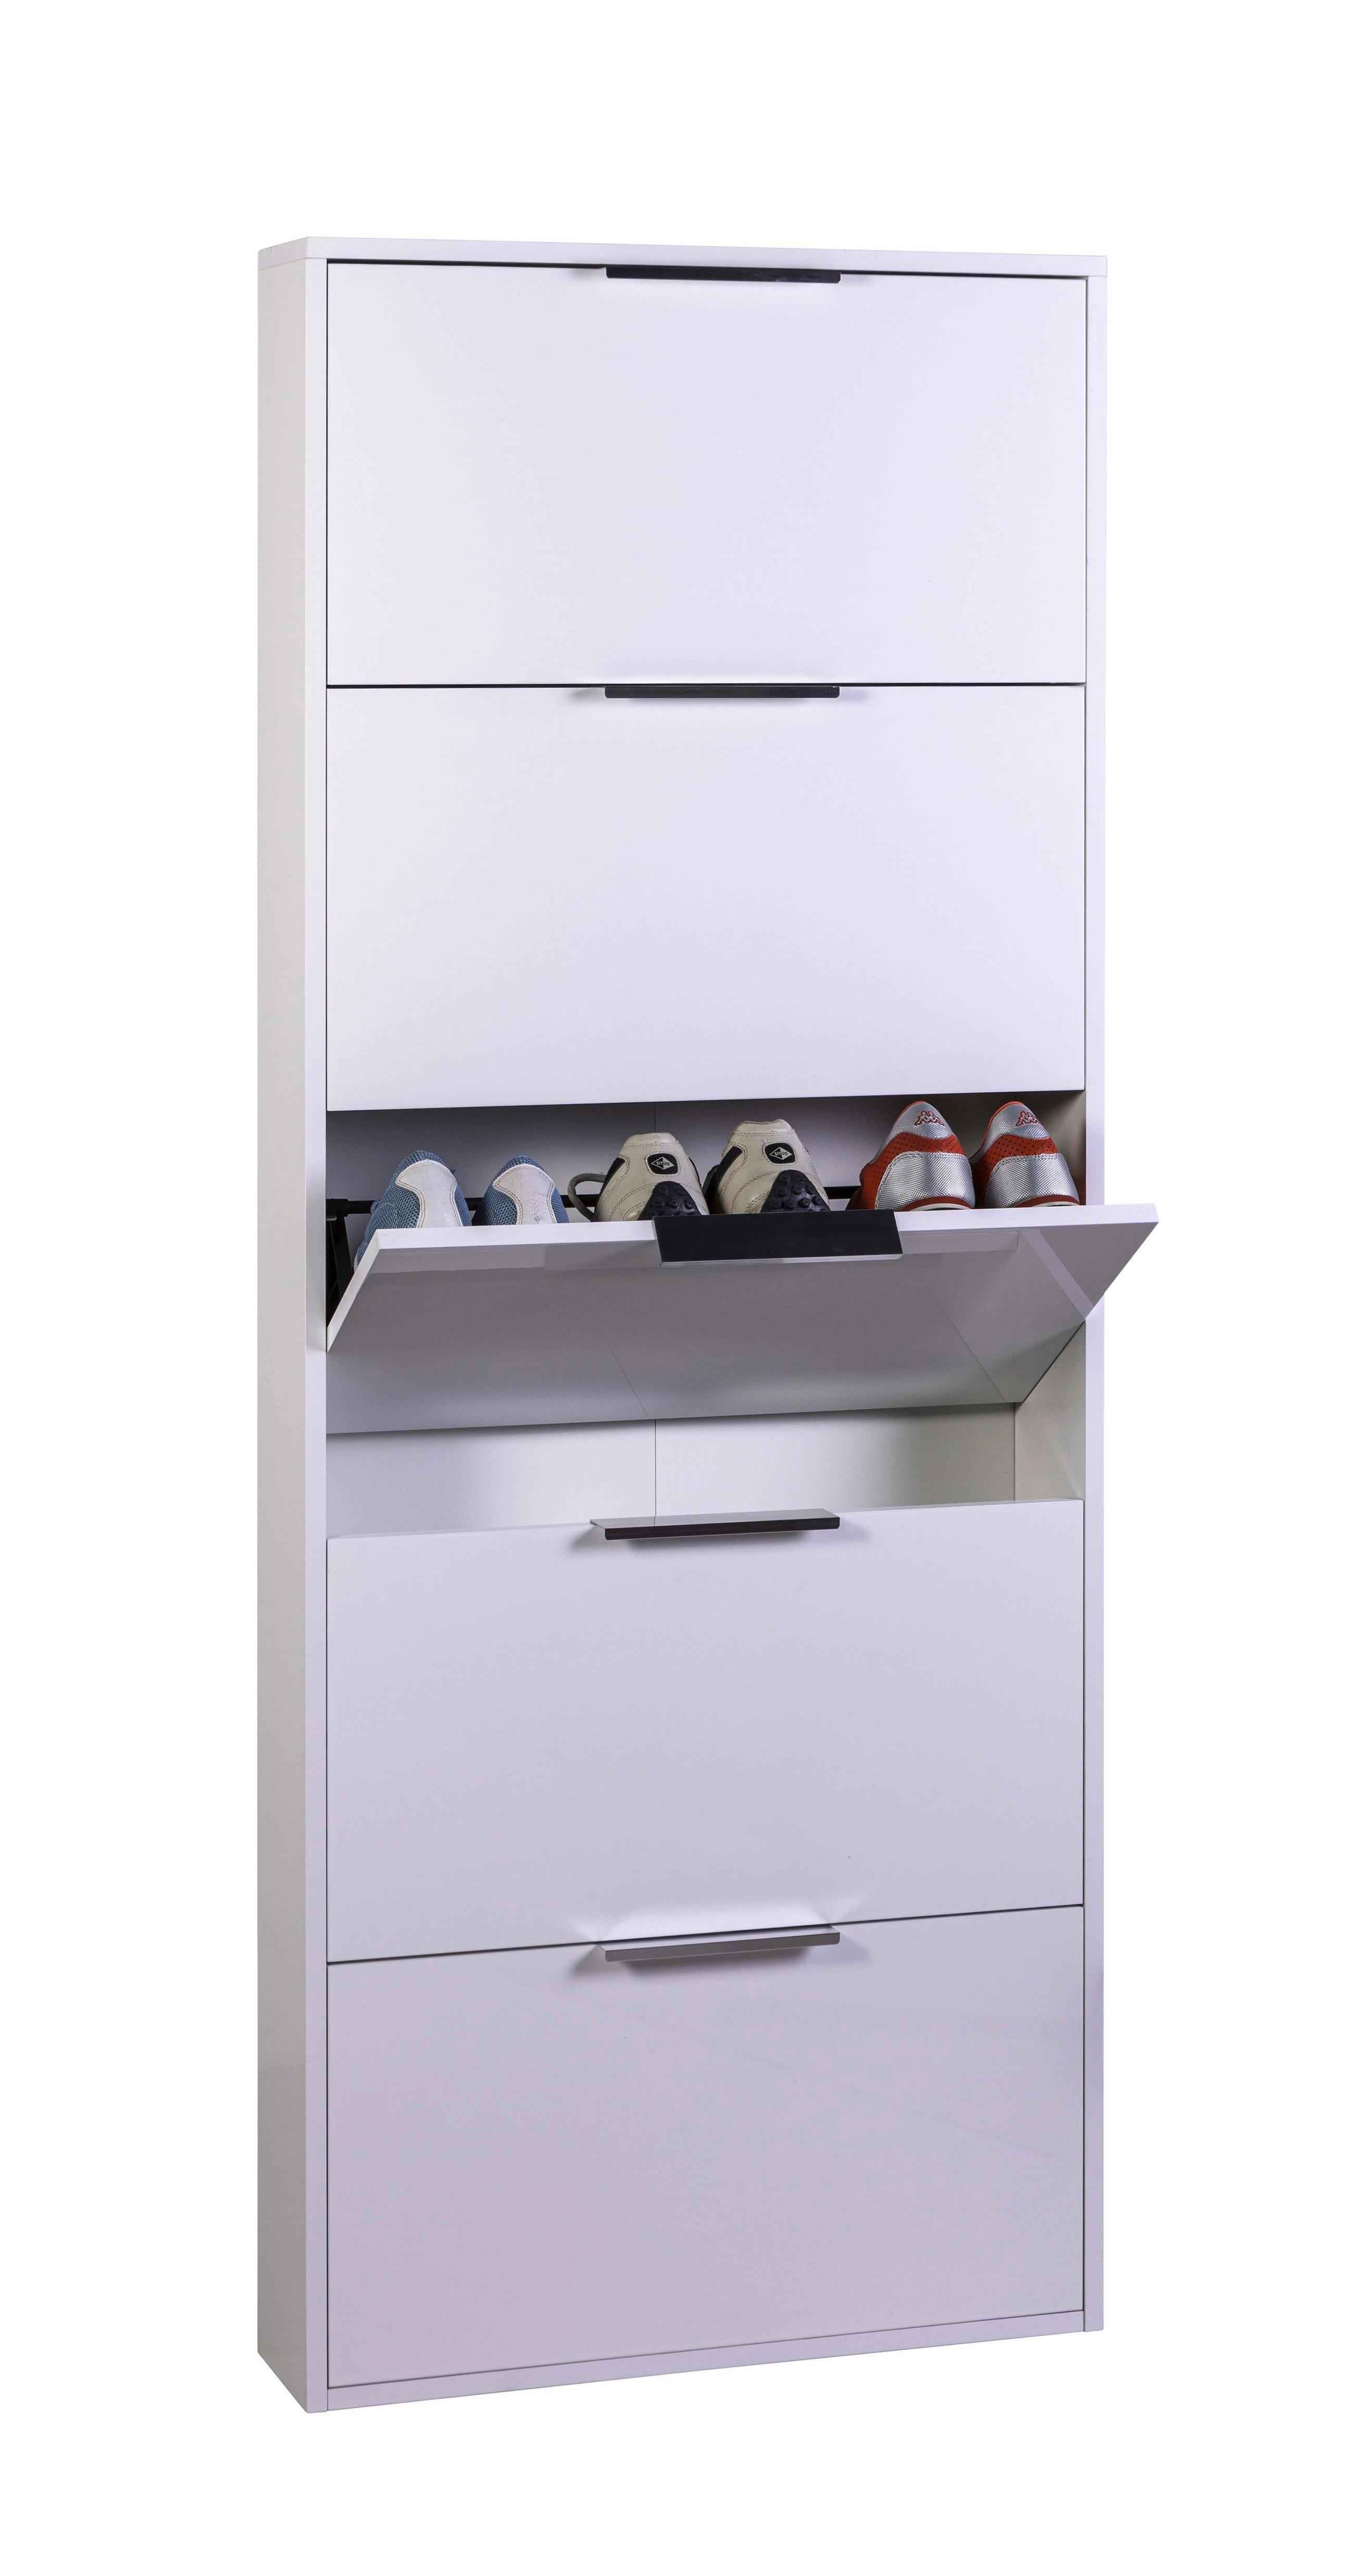 Schuhkipper in Weiß - Chromfarben/Weiß hochglanz, MODERN, Holzwerkstoff/Kunststoff (65/100/25cm) - Modern Living